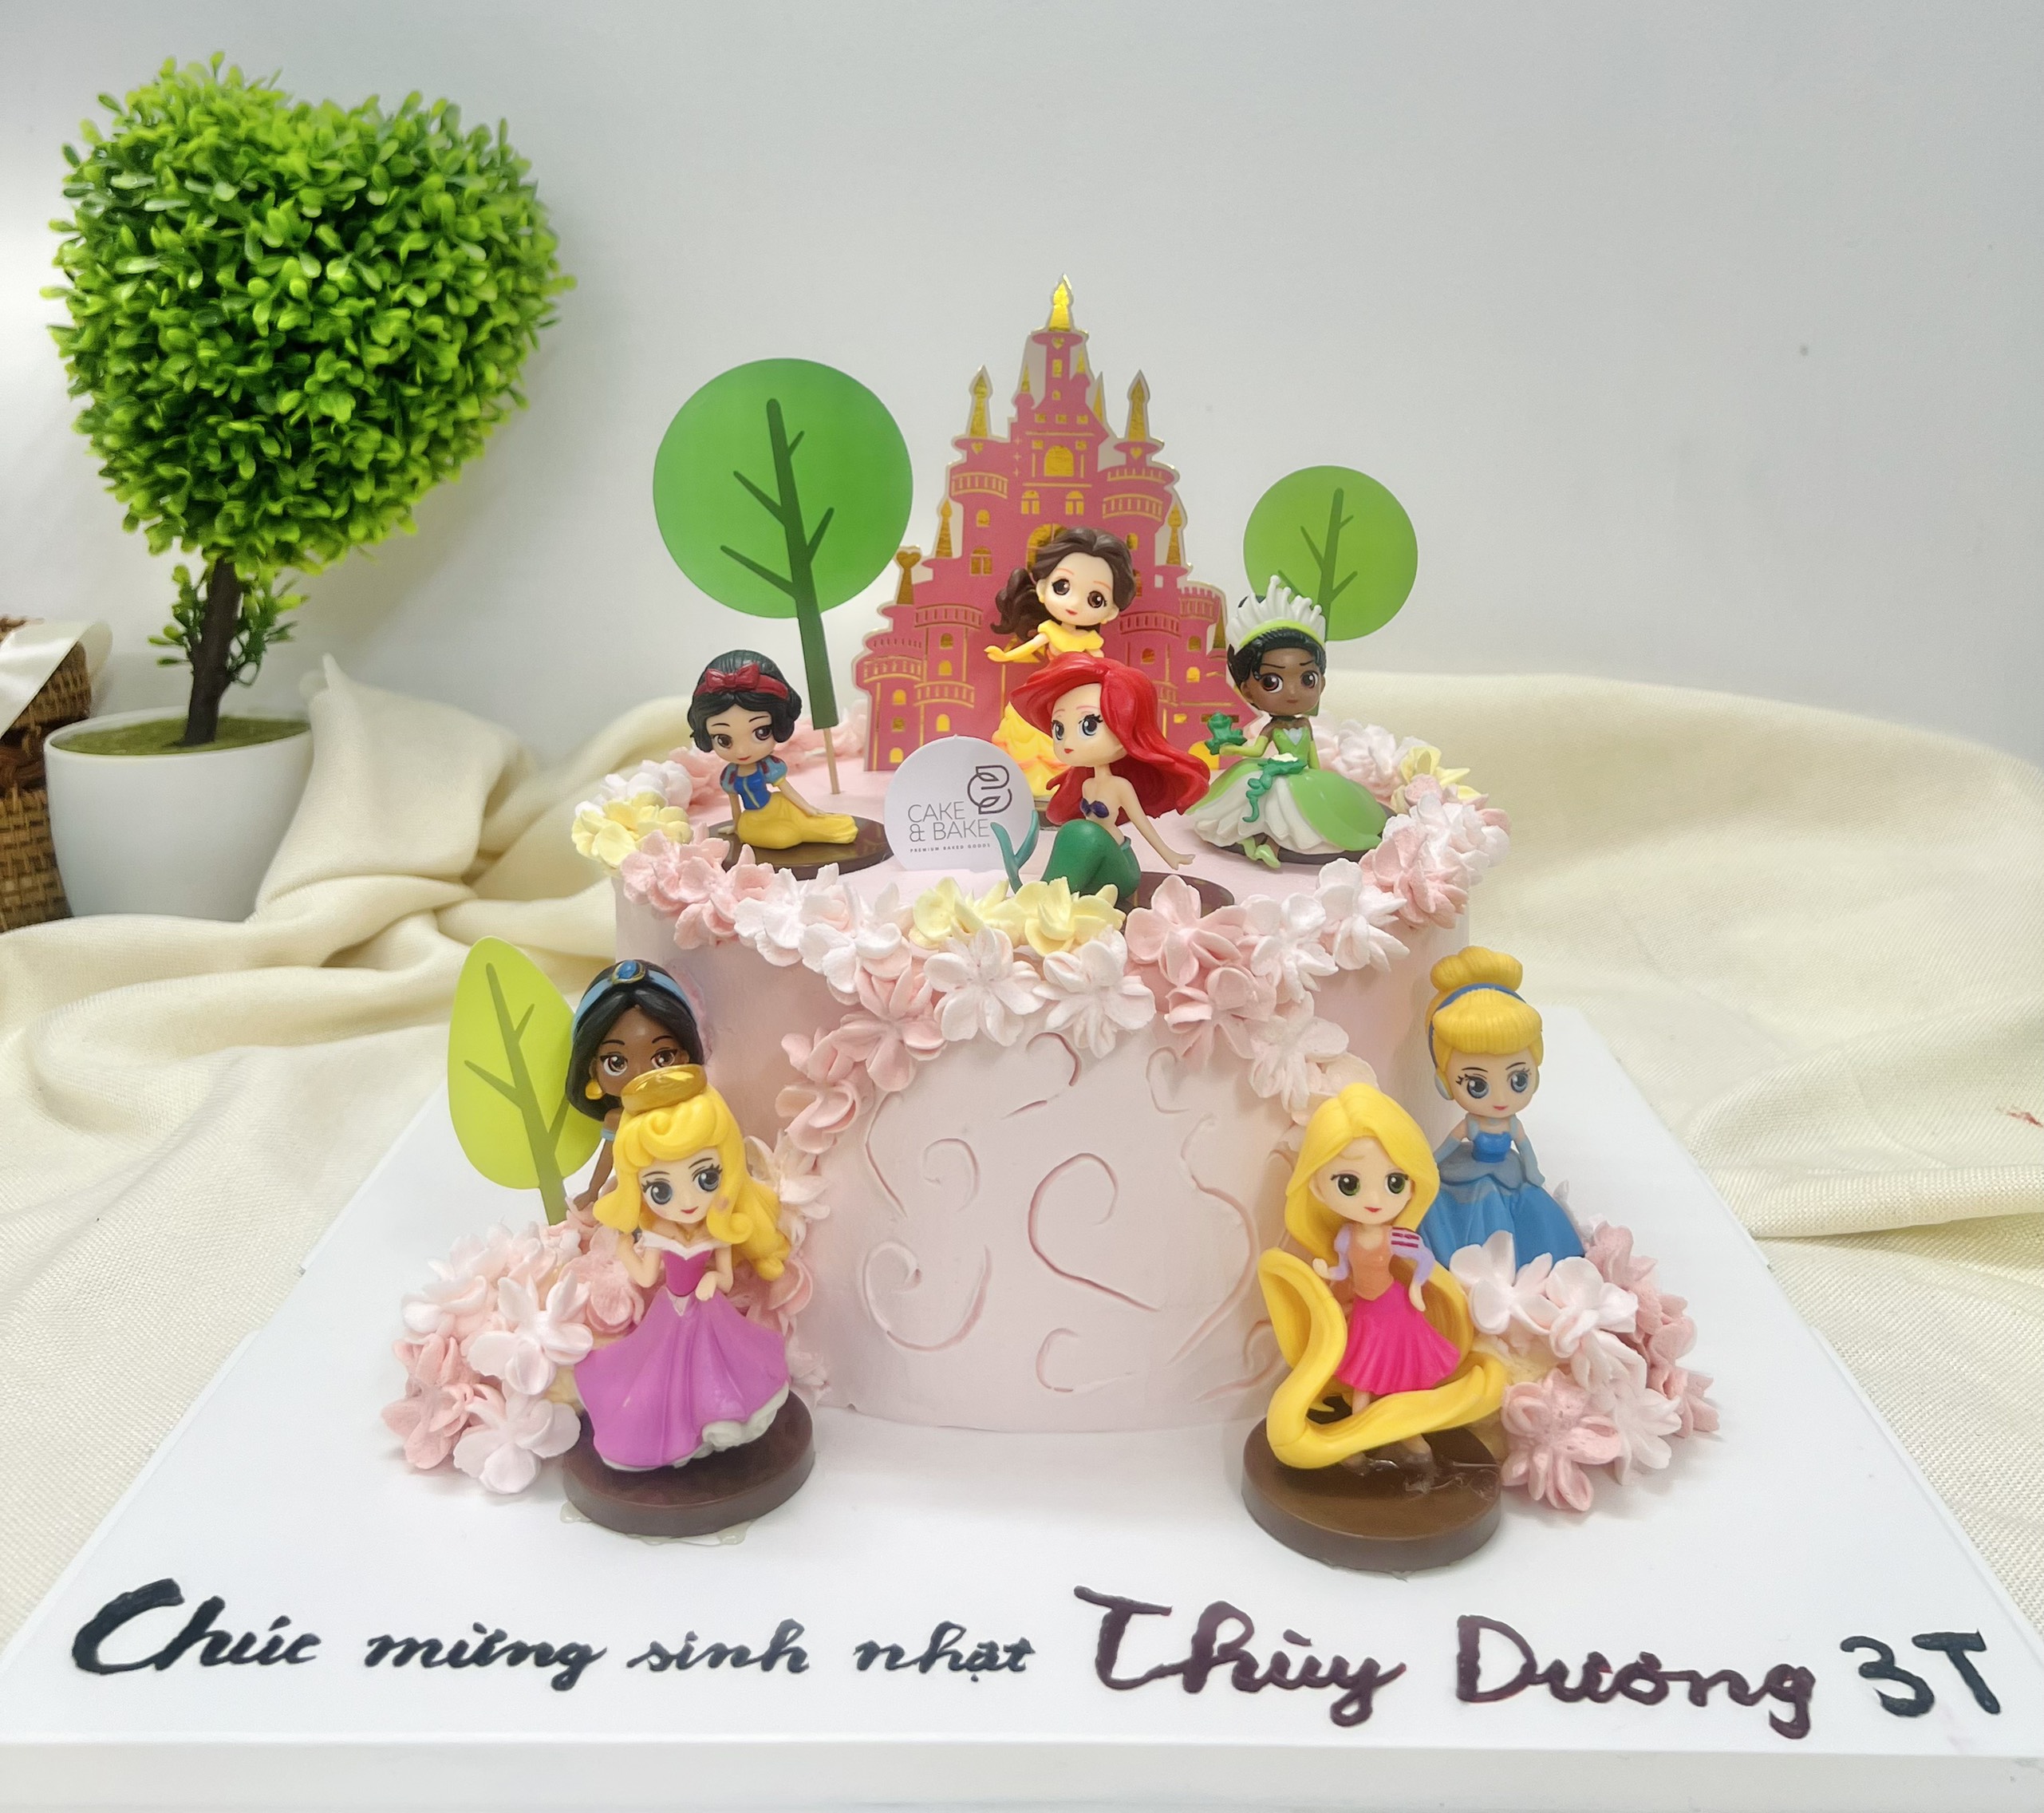 Tiệm làm bánh sinh nhật gia đình độc lạ Chi nhánh Phường Đồng Quang, Thành  phố Thái Nguyên, Tỉnh Thái Nguyên